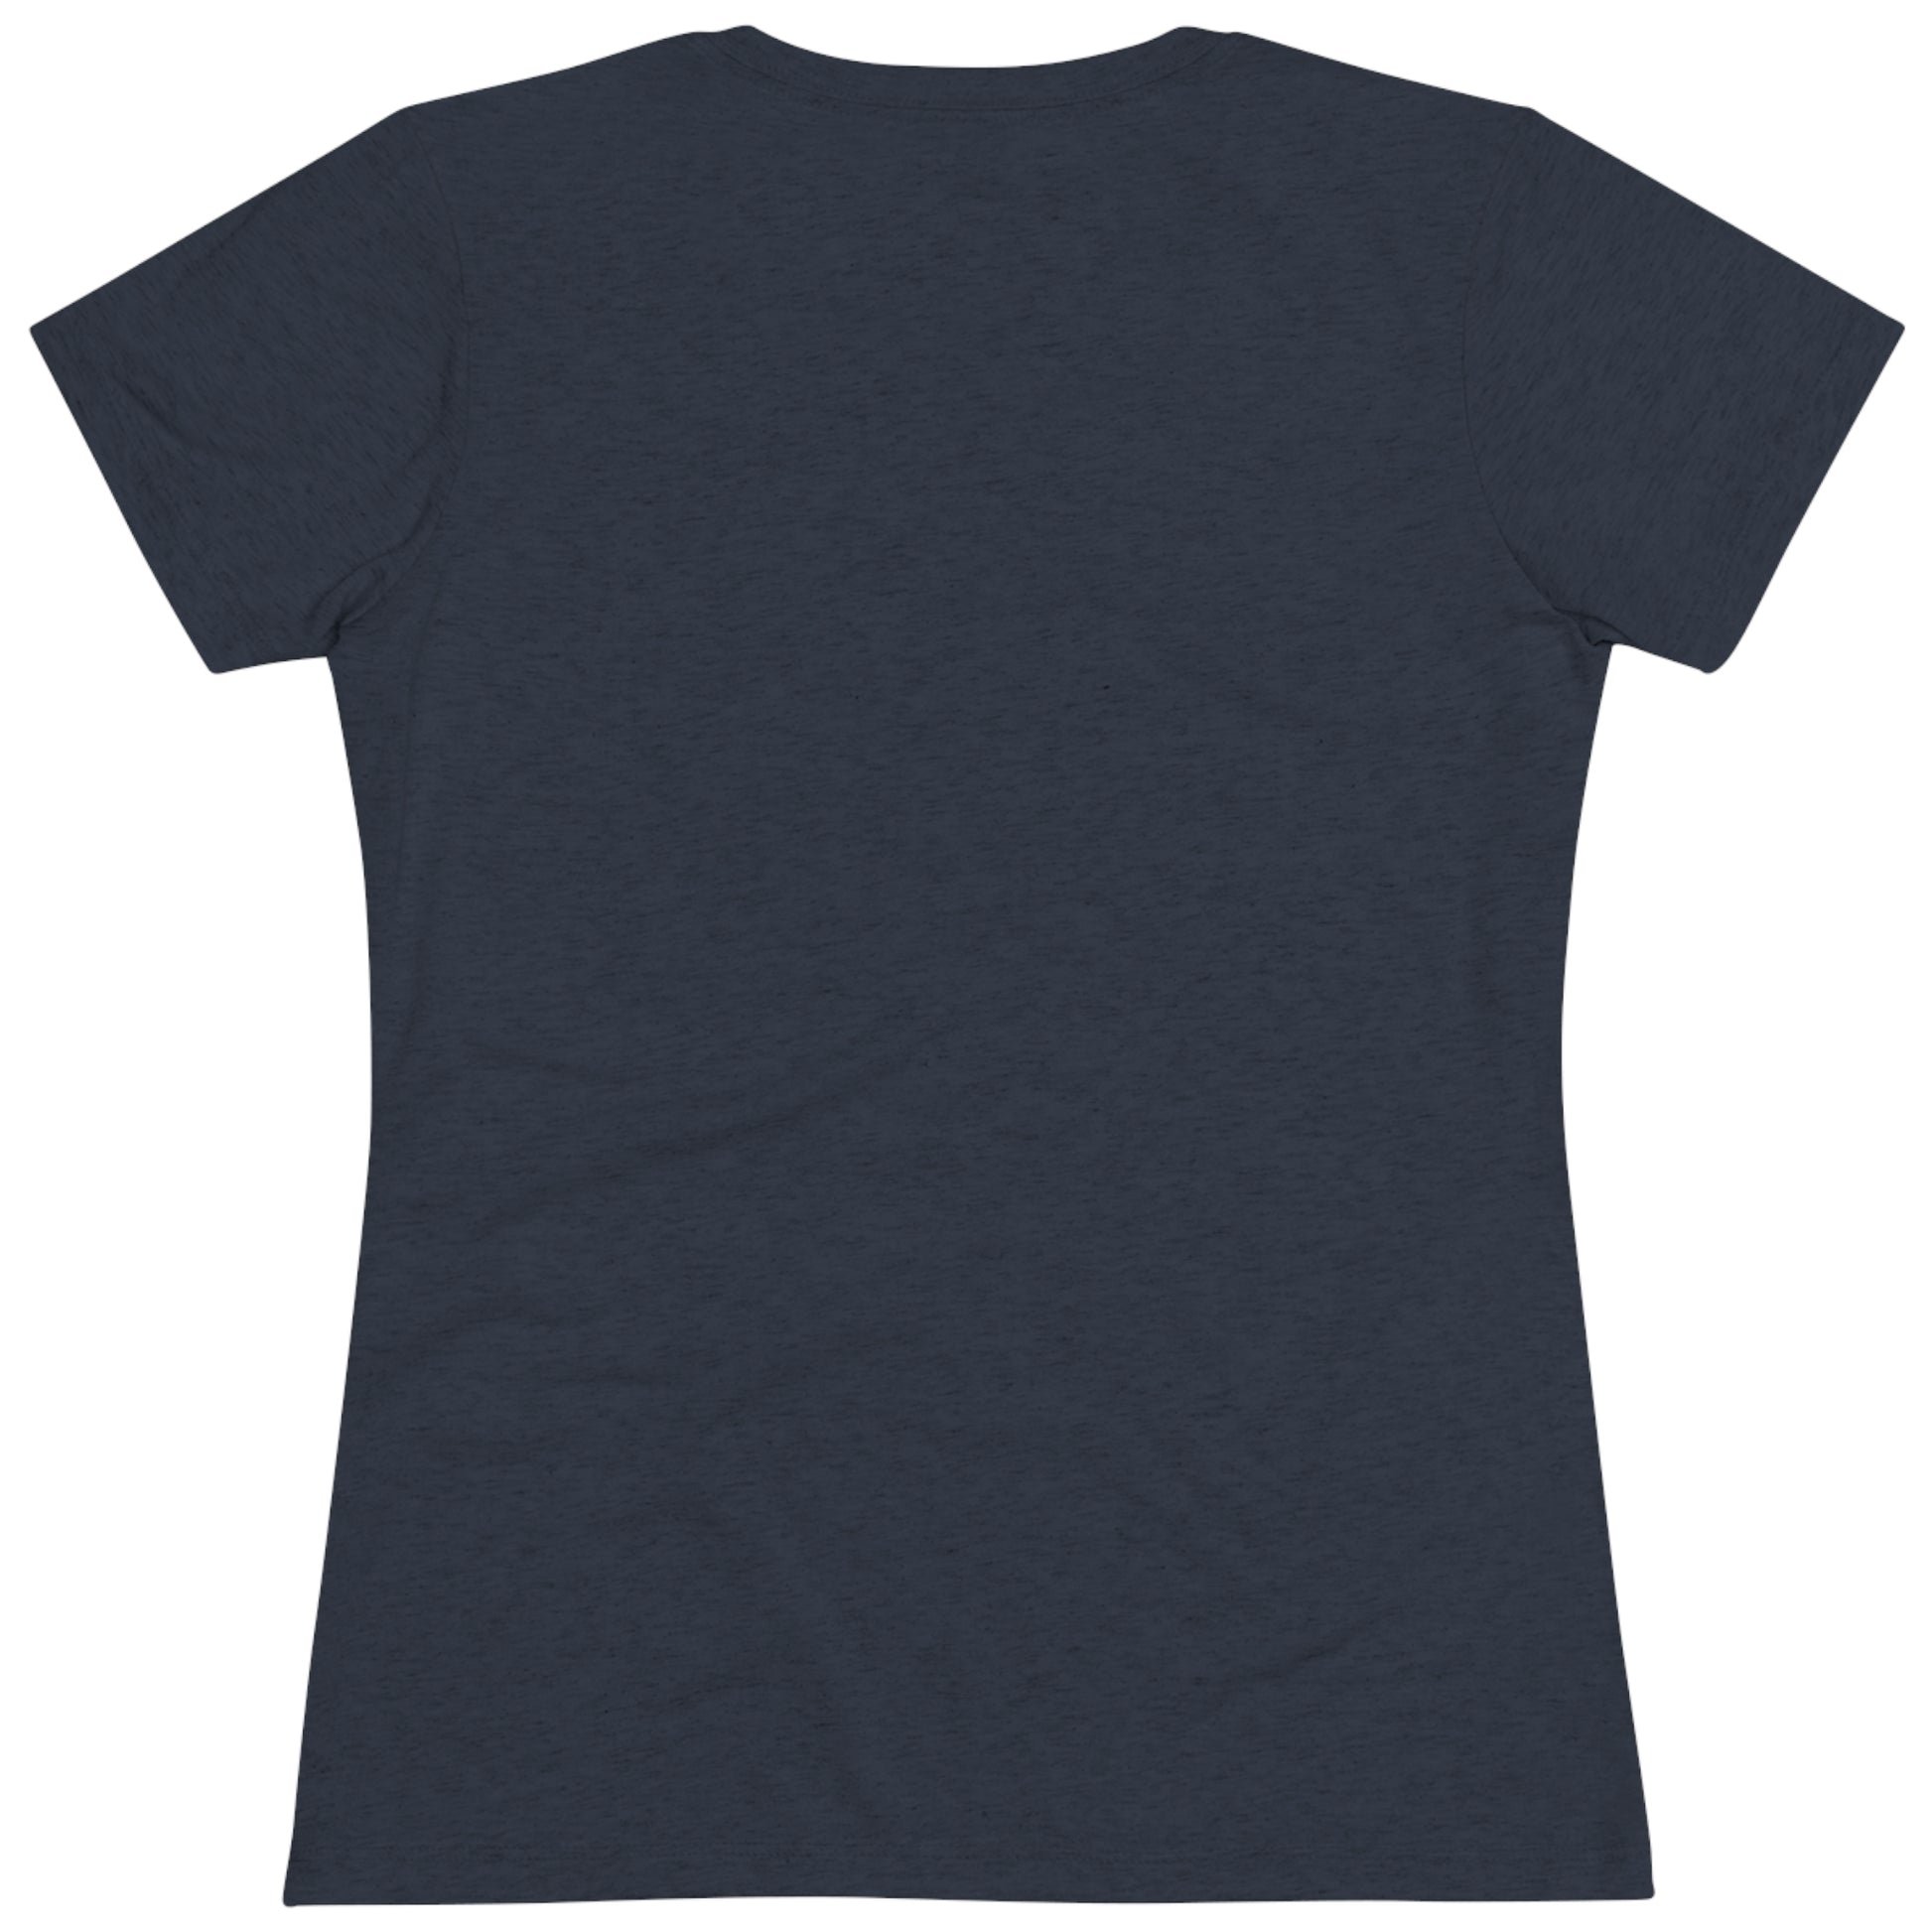 Women's "Dino T-shirt - Utah.com